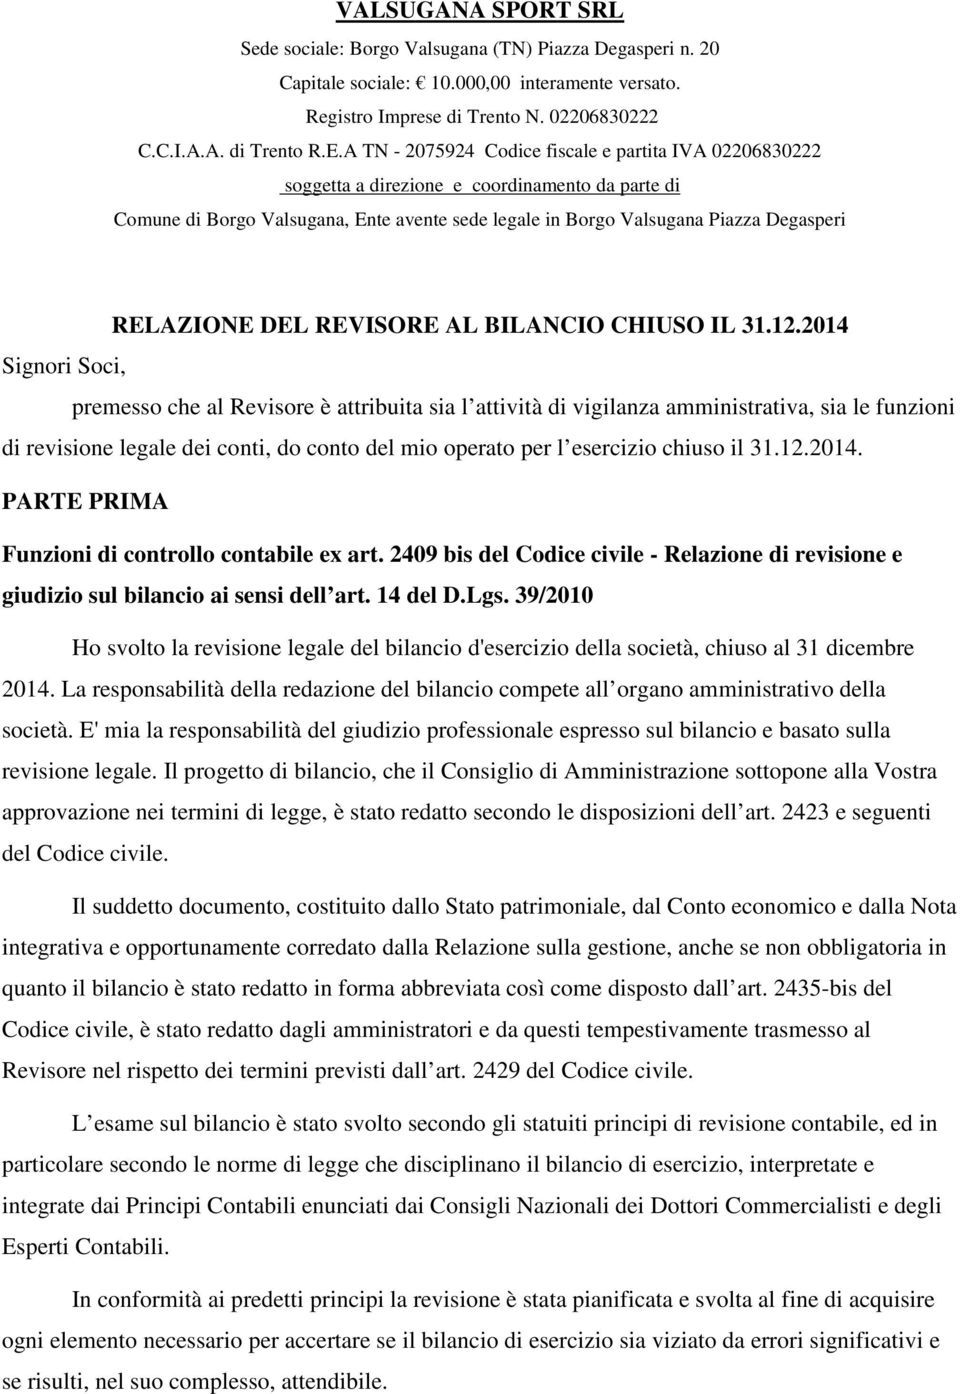 RELAZIONE DEL REVISORE AL BILANCIO CHIUSO IL 31.12.